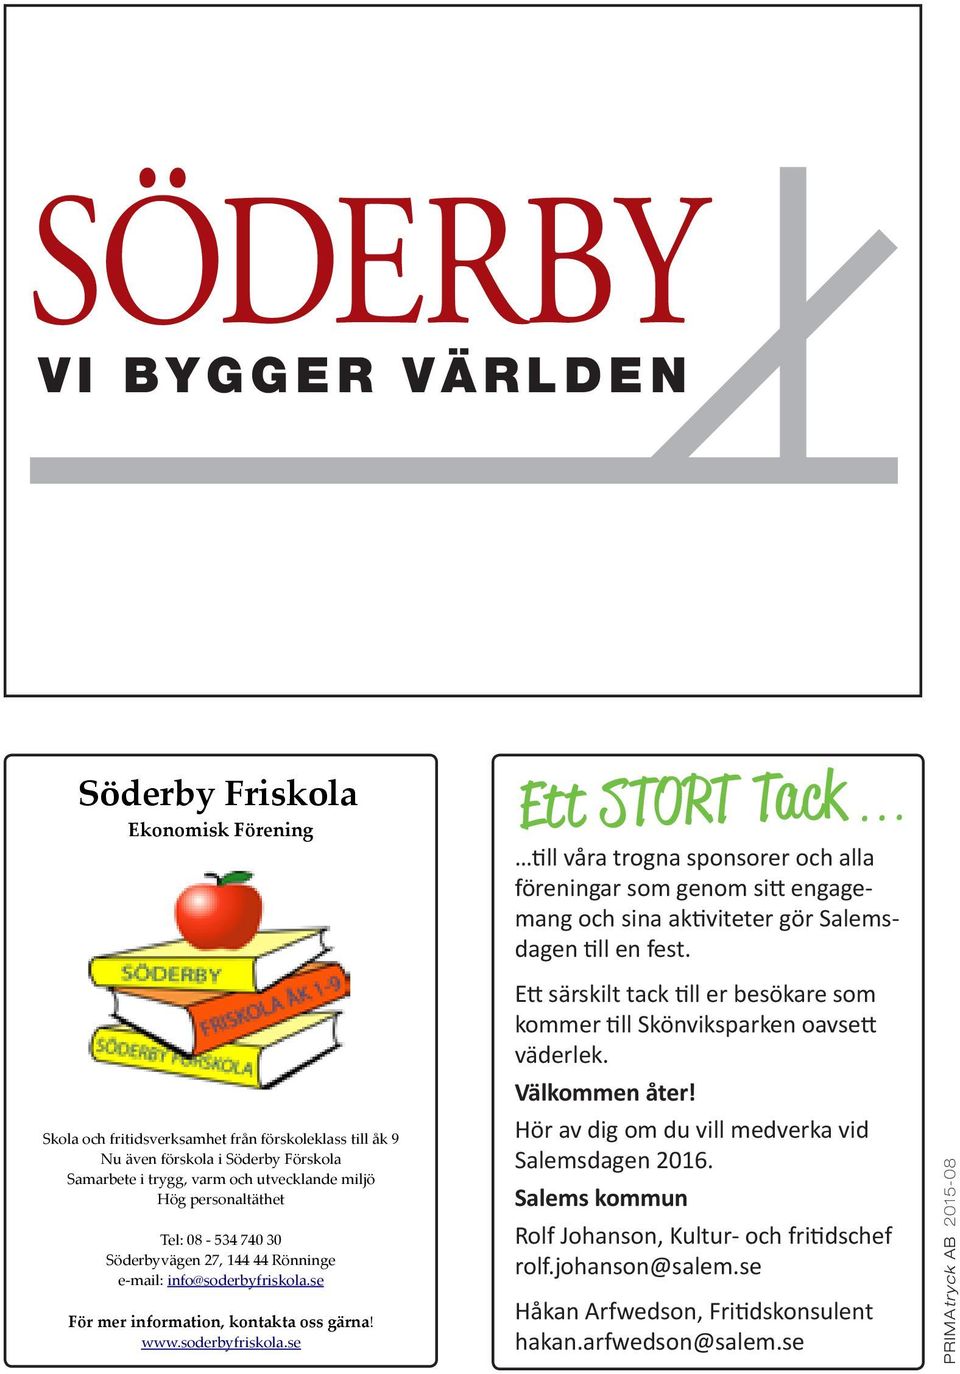 44 Rönninge e-mail: info@soderbyfriskola.se För mer information, kontakta oss gärna! www.soderbyfriskola.se Ett särskilt tack till er besökare som kommer till Skönviksparken oavsett väderlek.